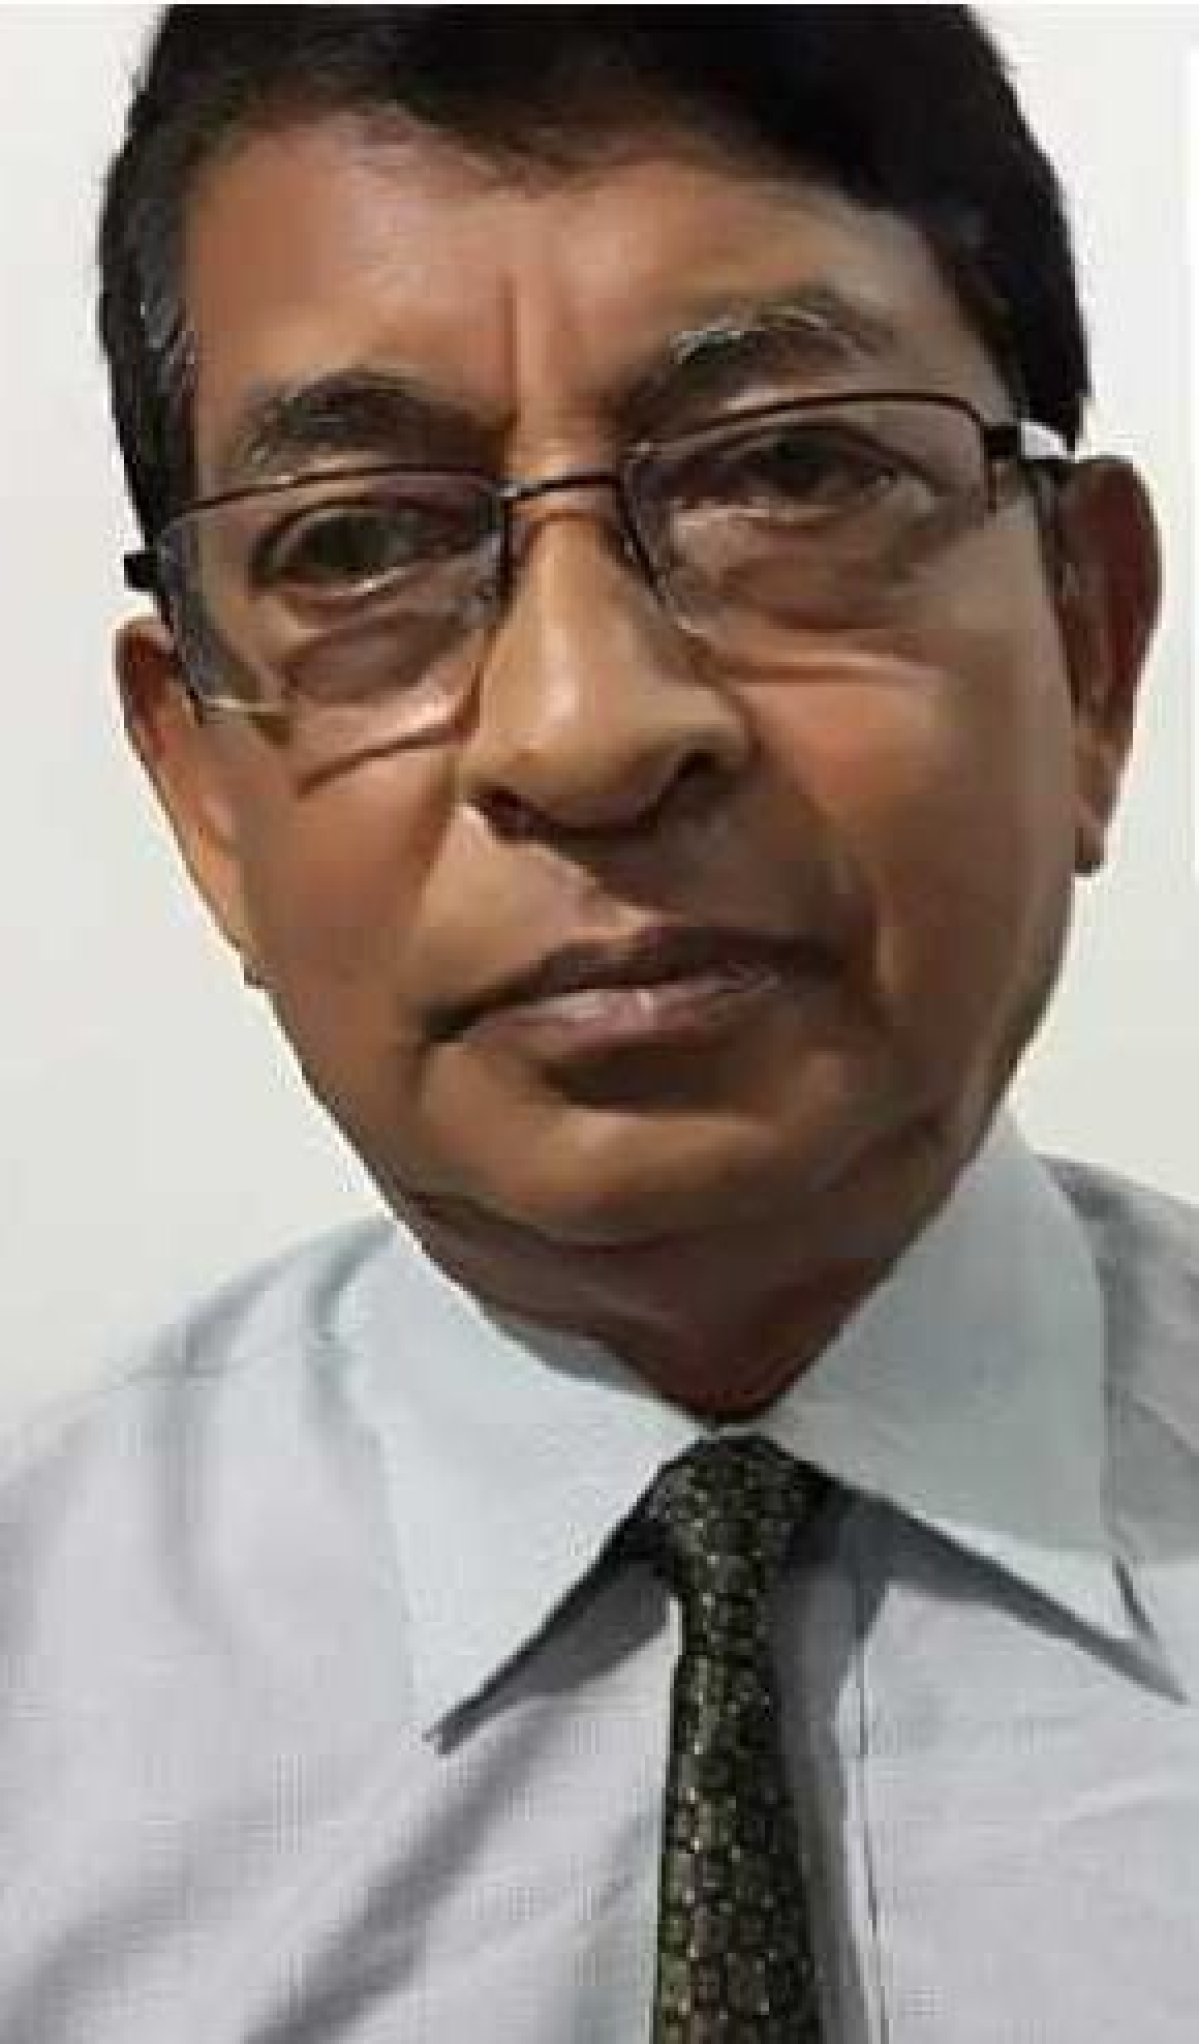 73 Year old Elderly doctor Dr Deben Dutta assaulted to death in Assam tea garden following worker death